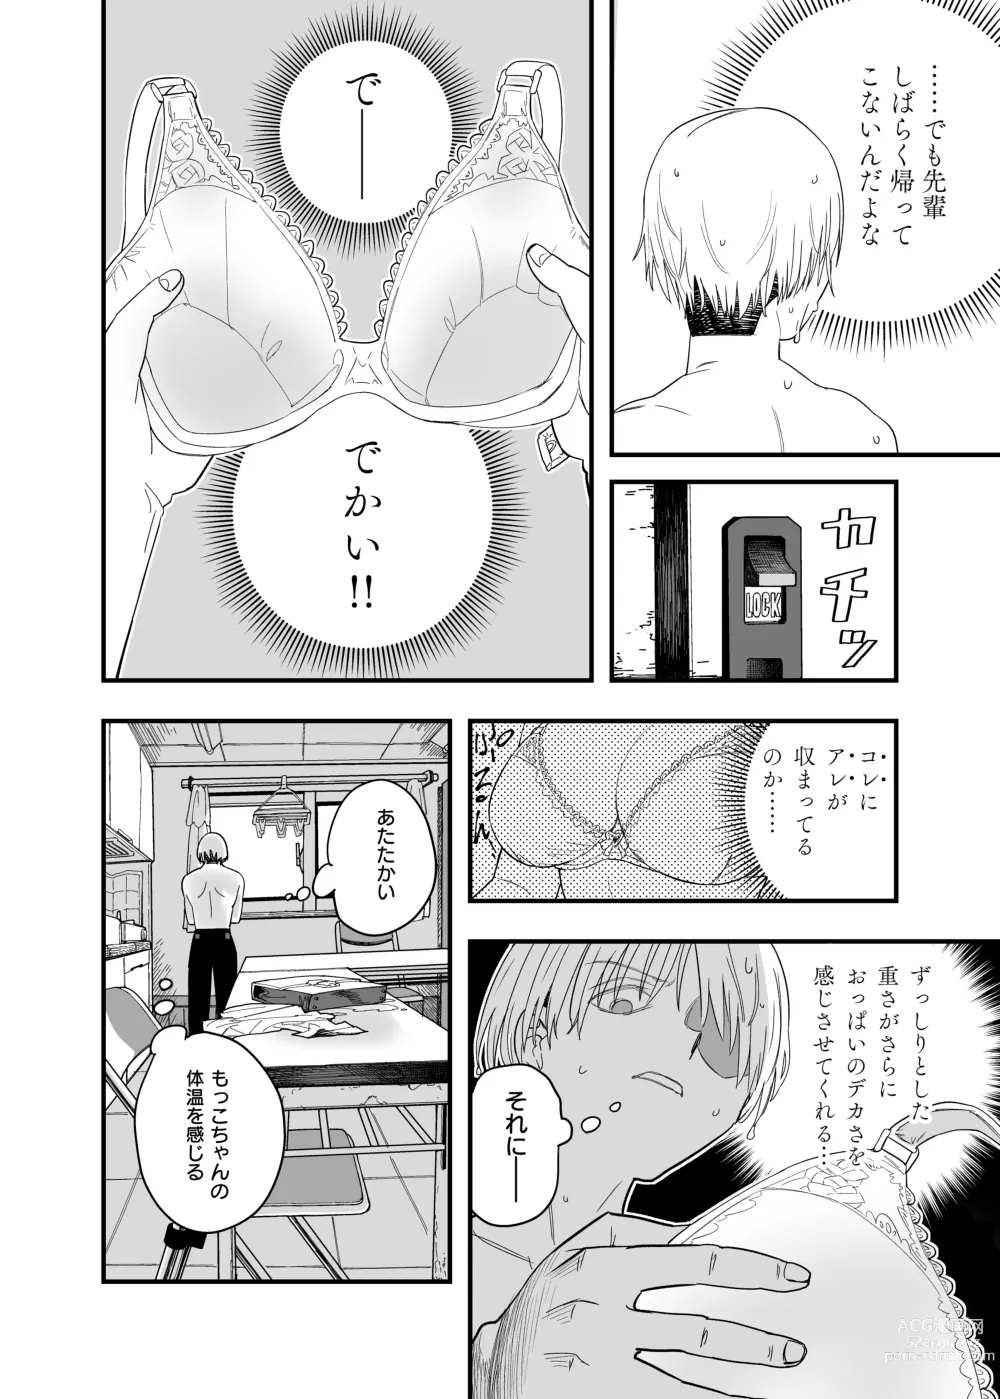 Page 18 of doujinshi Mokko-chan wa Chiisai kedo Okkii